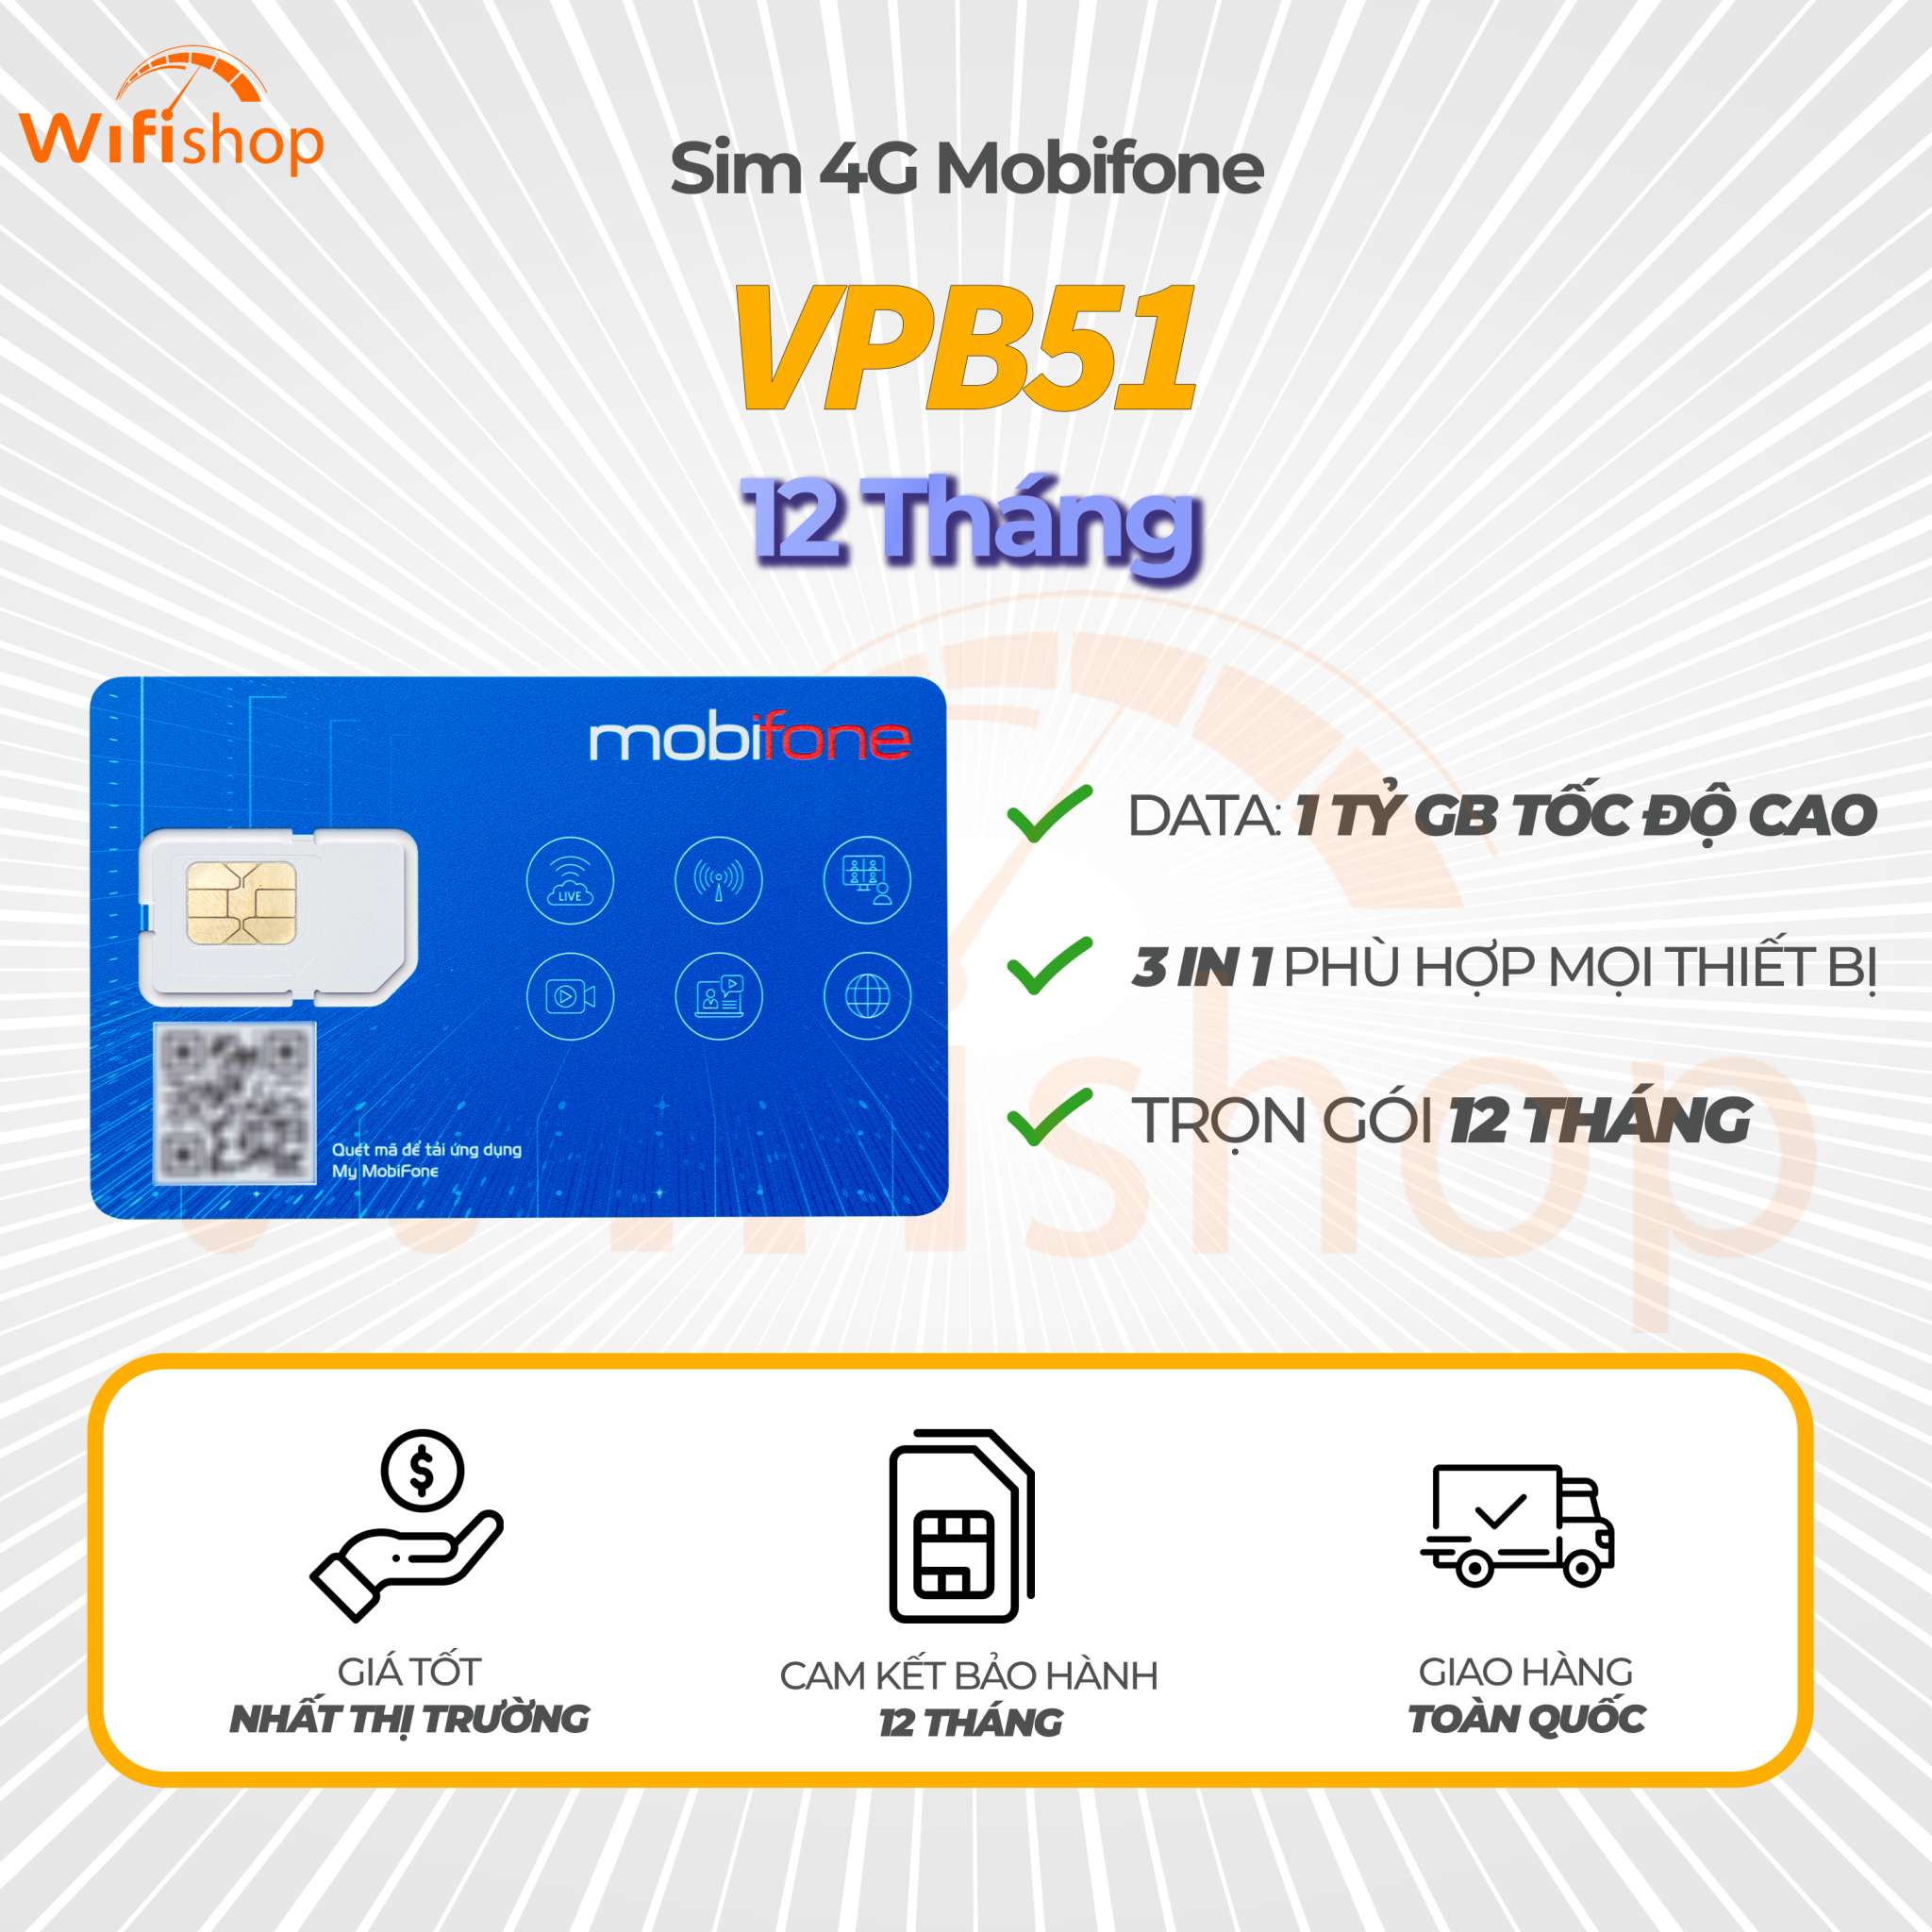 SIM 4G Mobifone VPB51, Không giới hạn dung lượng data tốc độ cao, Trọn Gói 12 Tháng không phải nạp tiền Đã Đăng Ký Thông Tin